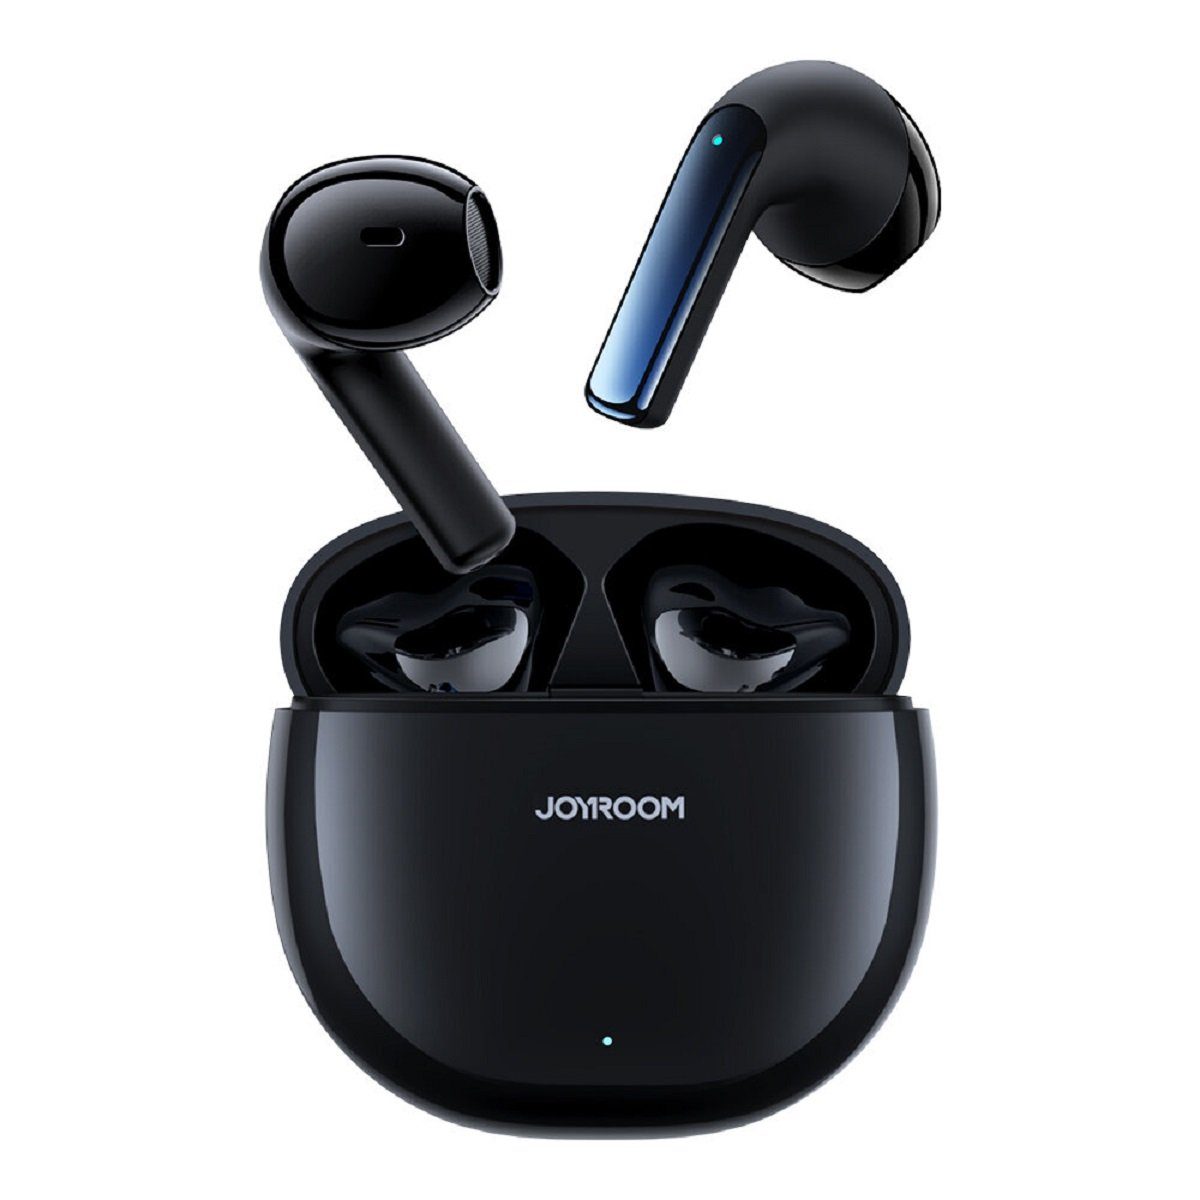 JOYROOM Jpods Series JR-PB1 TWS ENC IPX4 Bluetooth-Kopfhörer (Bluetooth, Intelligente Touch-Steuerung, Bluetooth 5.3, ENC-Geräuschunterdrückung, IPX4 wasserdicht, Ergonomisches Design) Schwarz